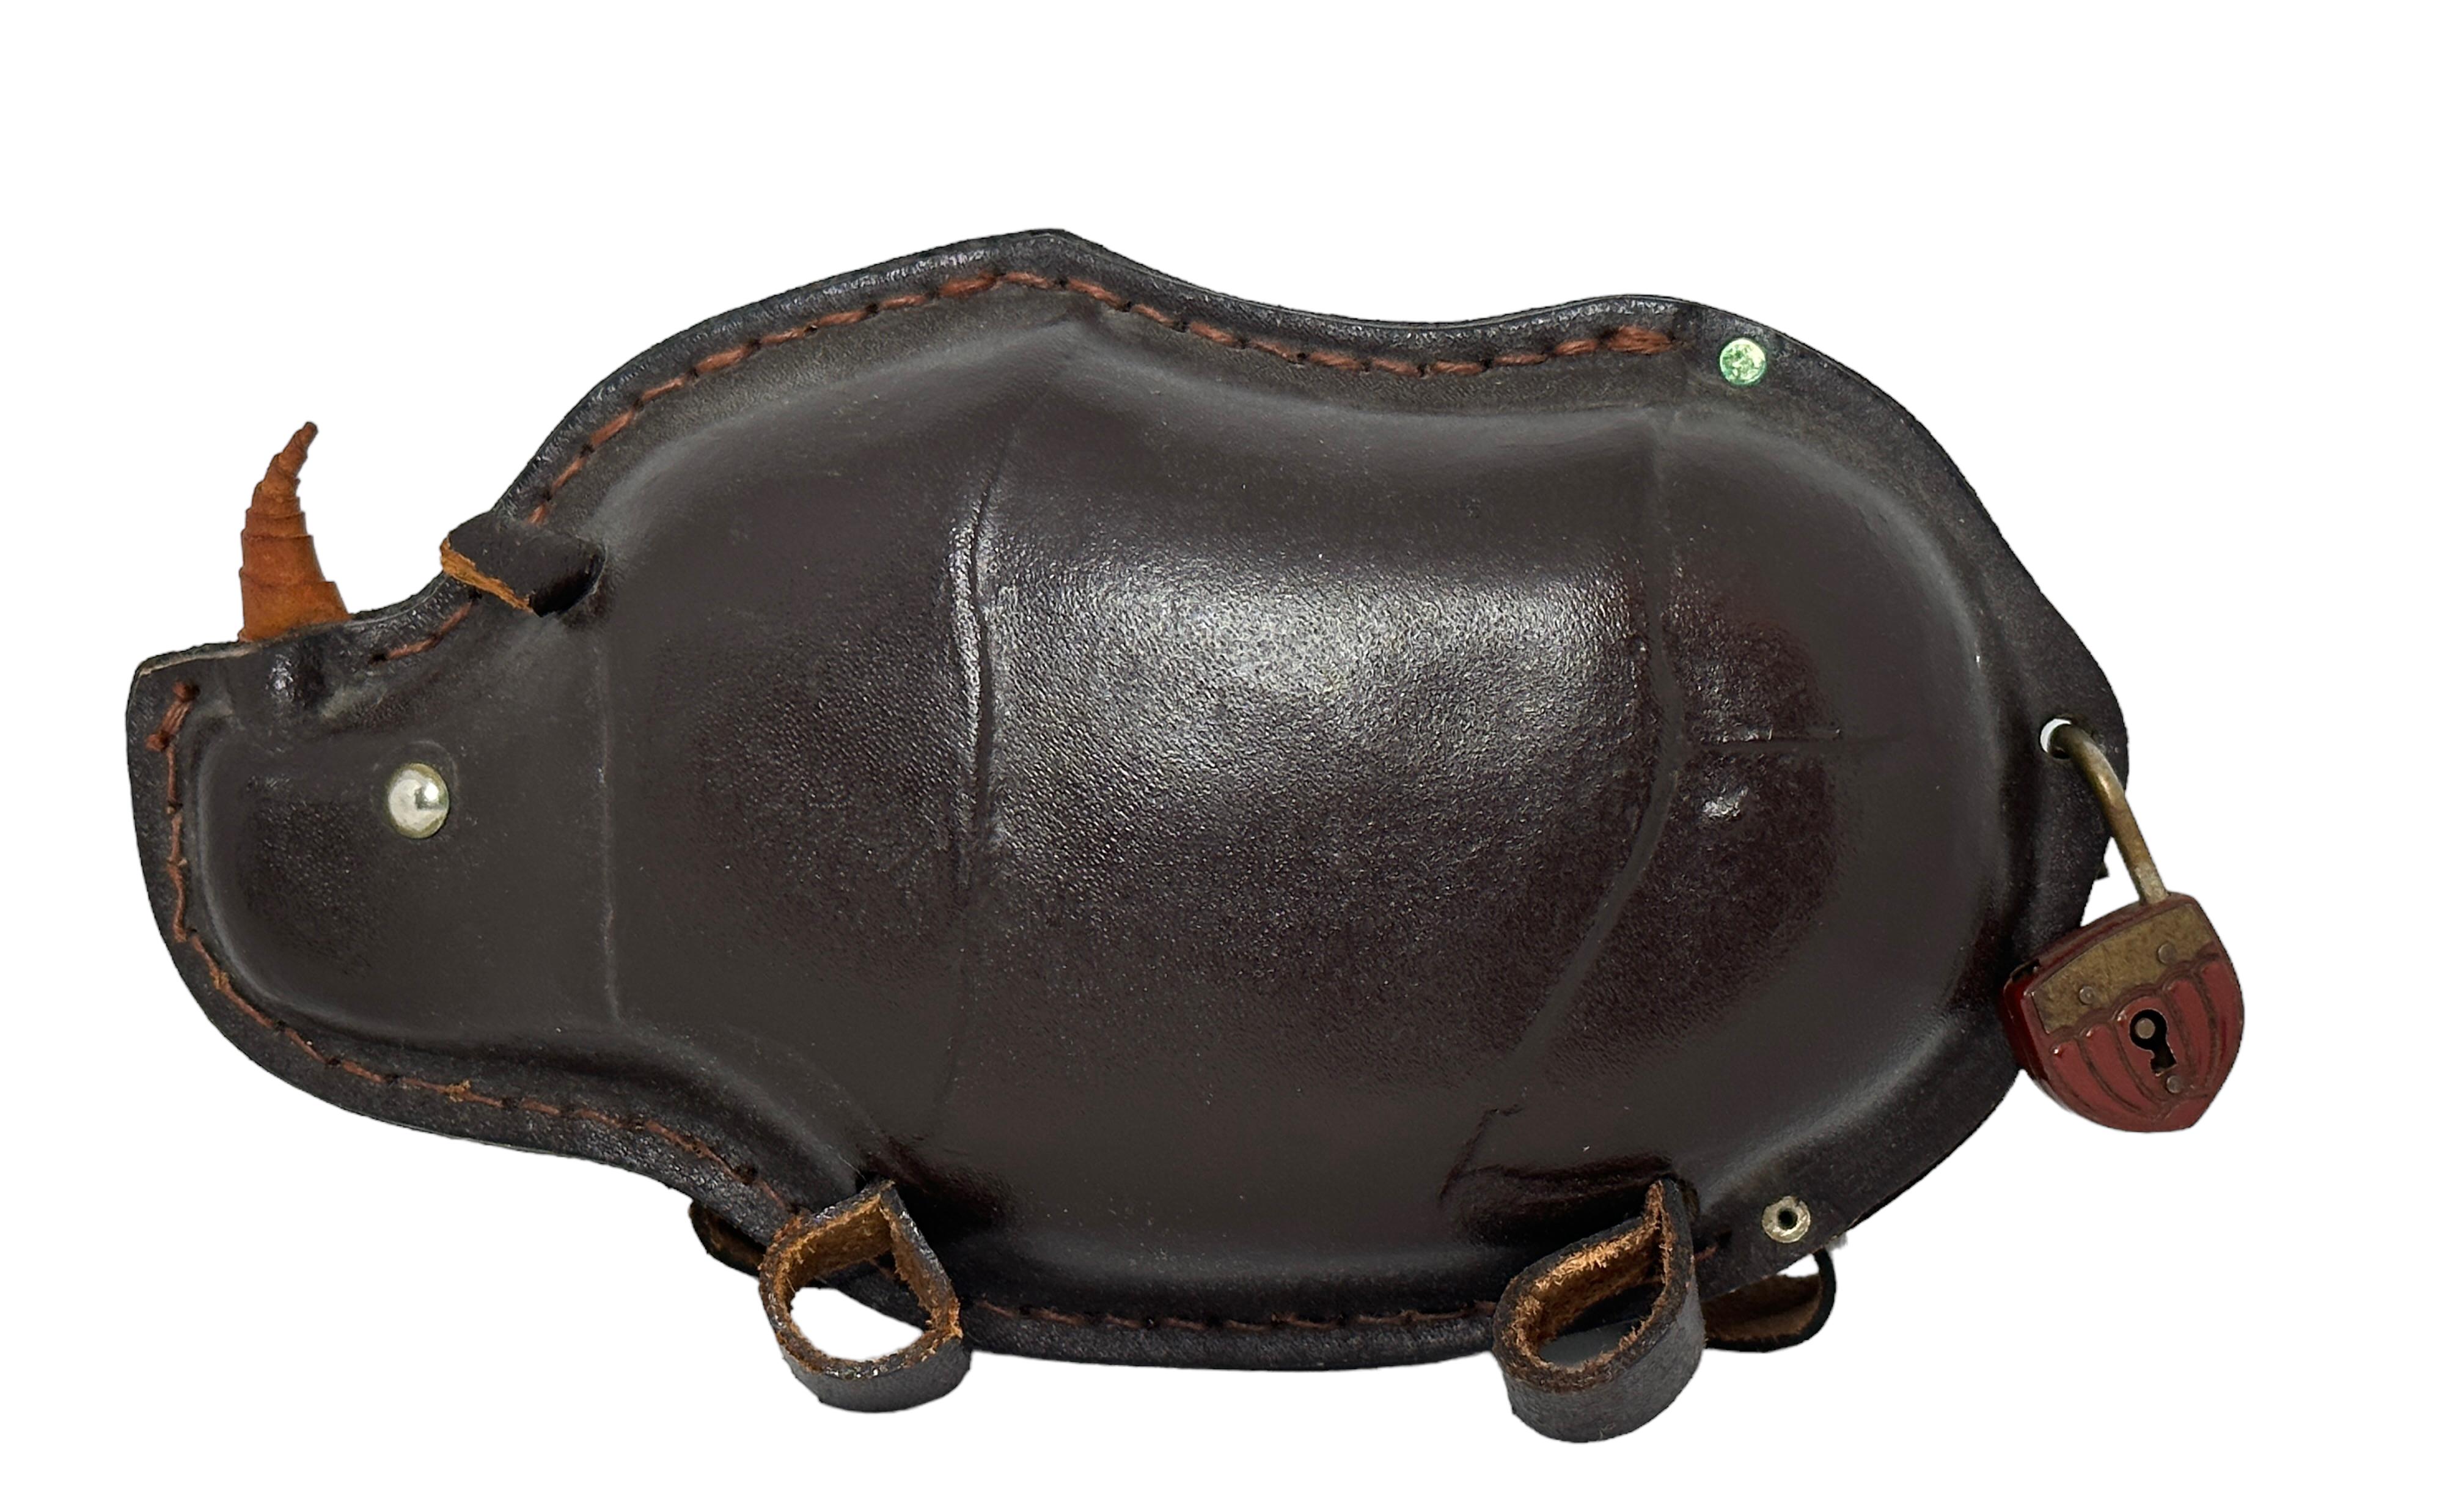 Wunderschöne, aus Leder gefertigte Spardose Rhino. Ein schöner Dekorationsartikel aus dunkelbraunem Leder mit einem kleinen Metallschloss. Es tut mir sehr leid, dass der alte Originalschlüssel nicht mehr vorhanden ist. Hergestellt in Europa in den